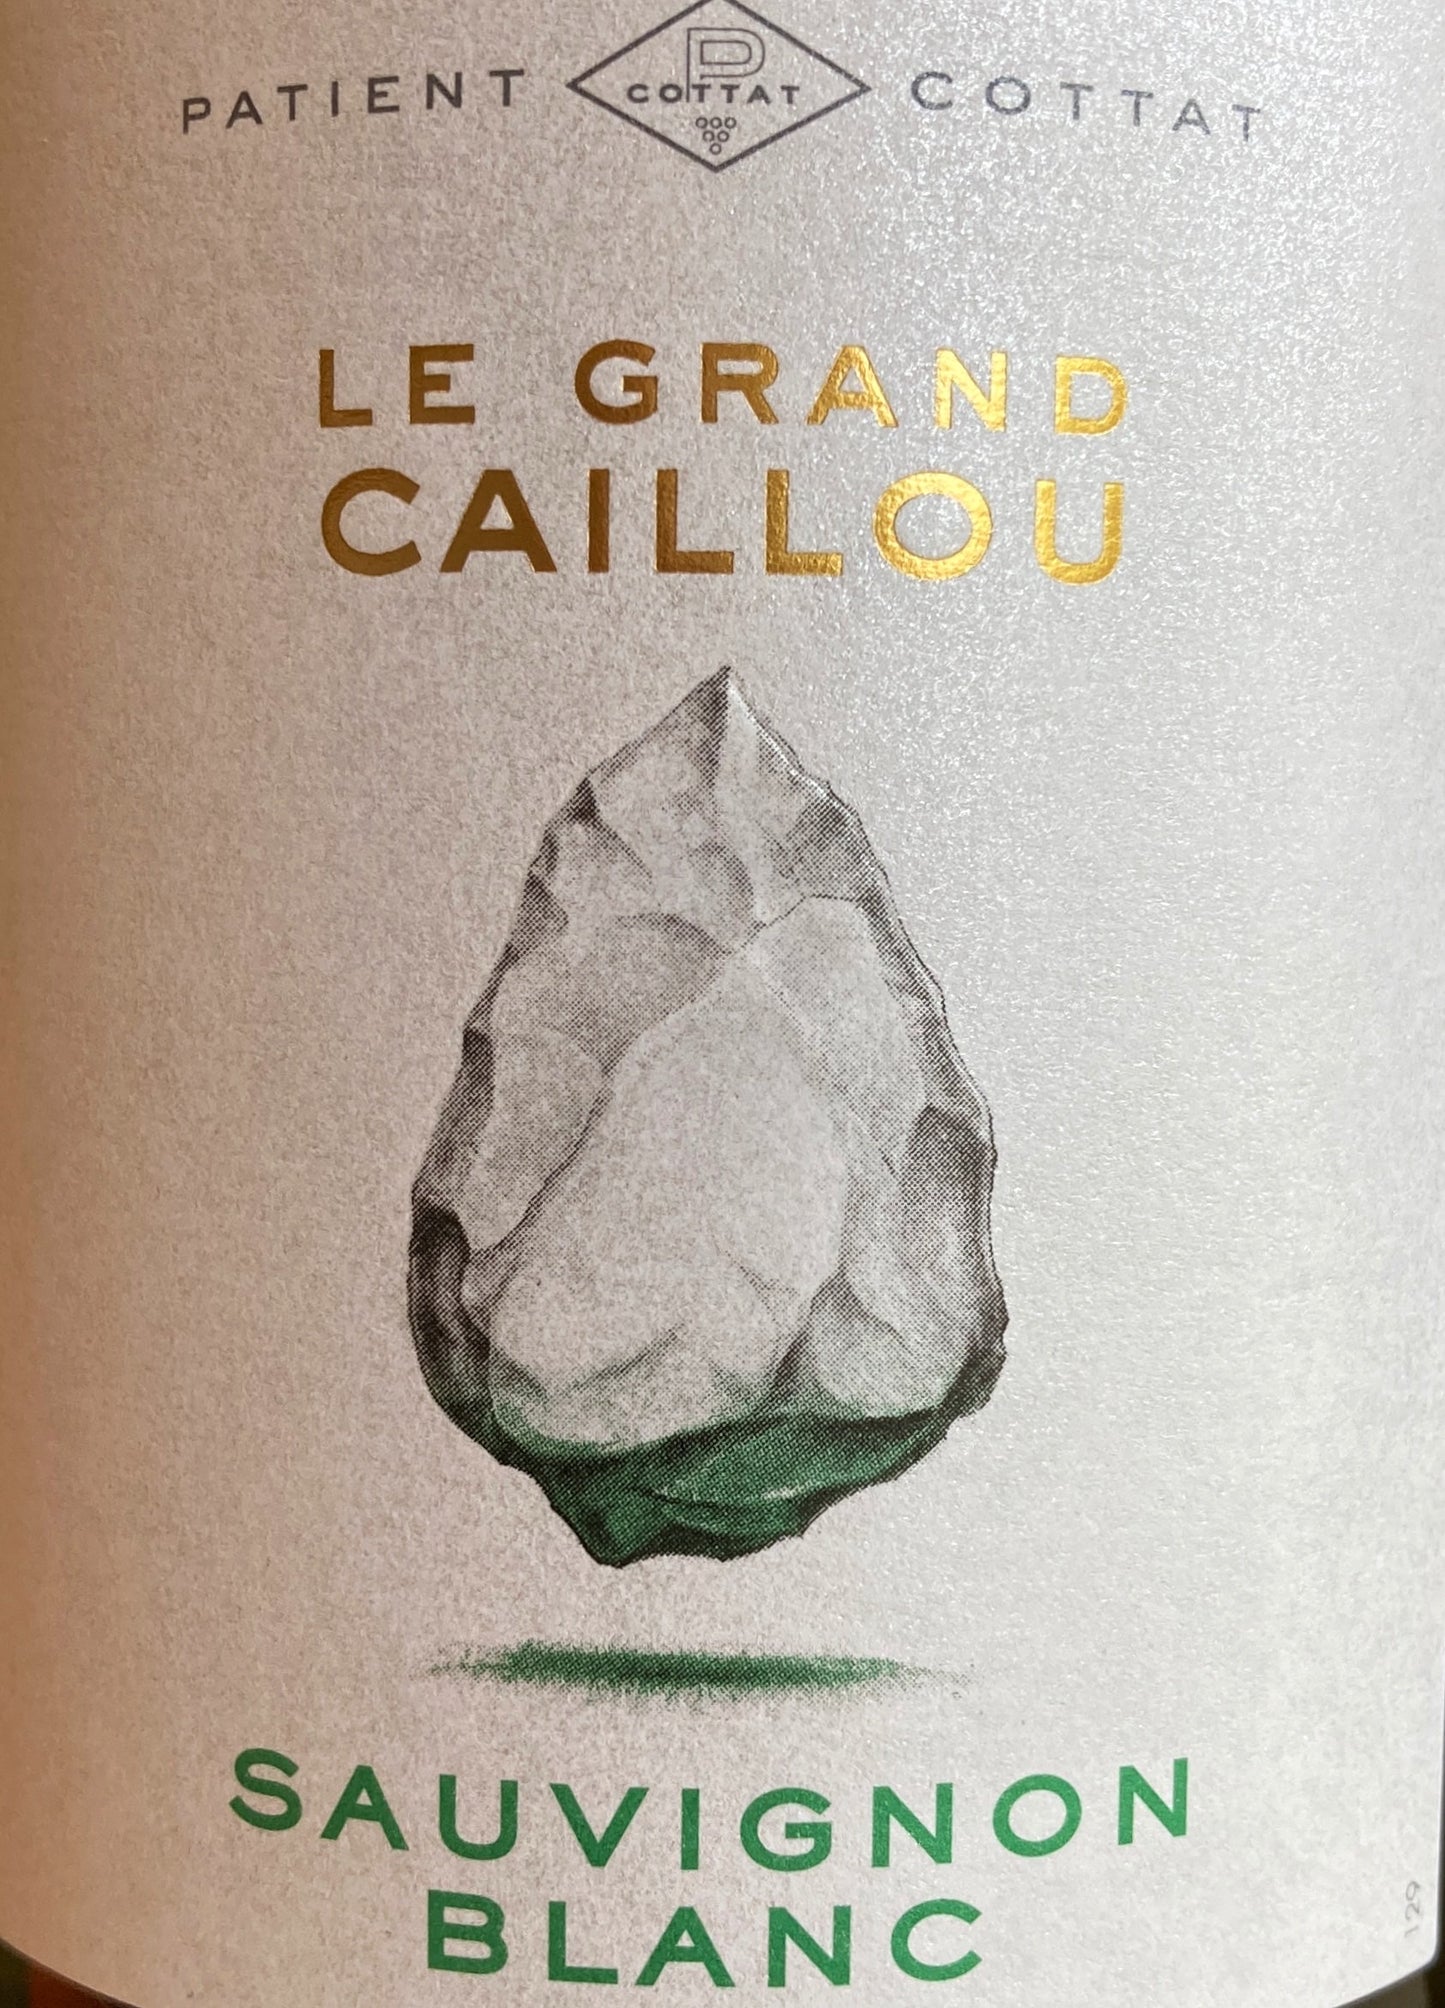 Patient Cottat 'Le Grand Caillou' - Sauvignon Blanc